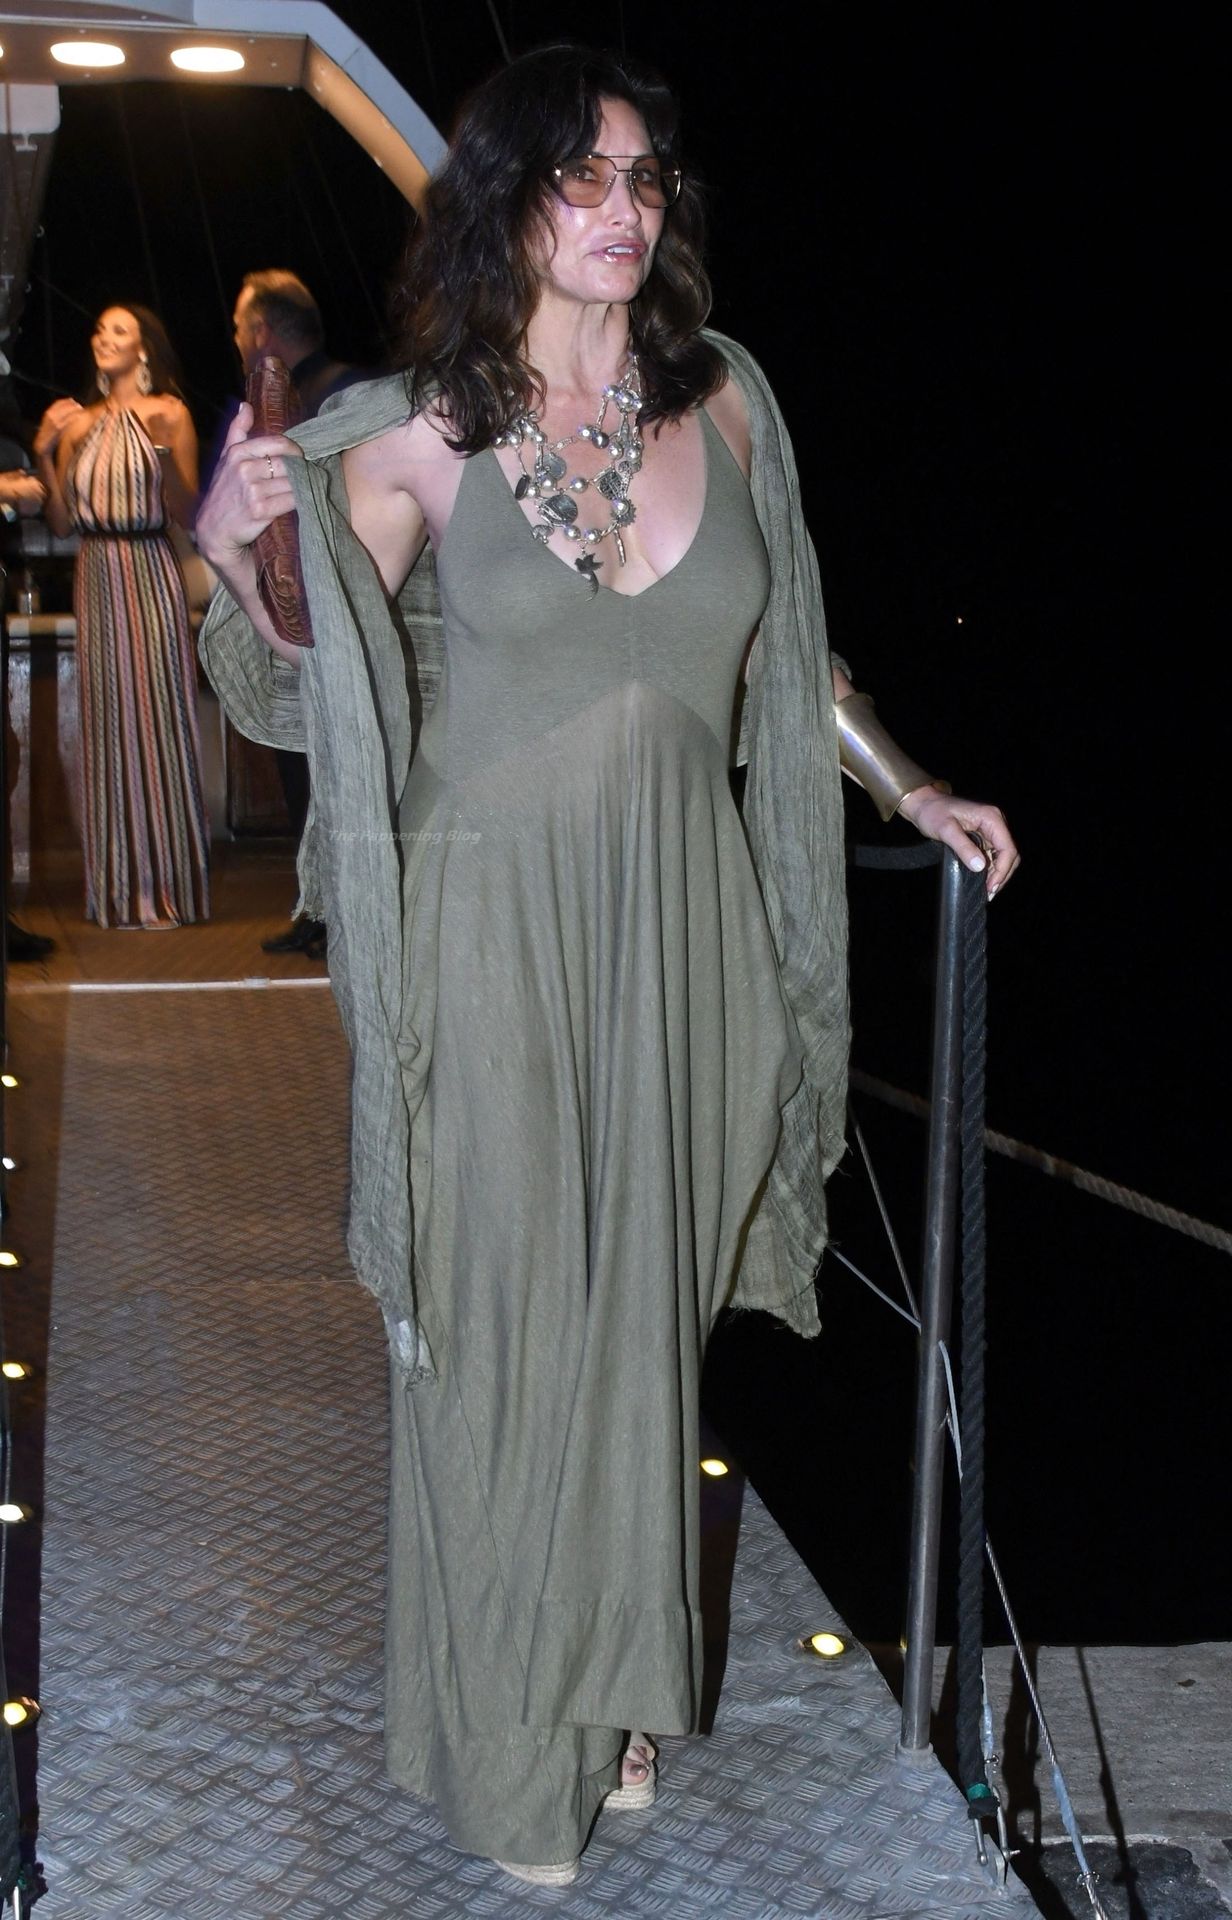 Gina Gershon Arrives at the Tortuga Boat Party (35 Photos)